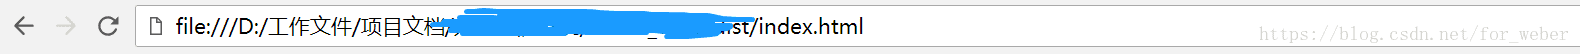 解决Vue项目打包后index.html页面显示空白且图片路径错误的问题